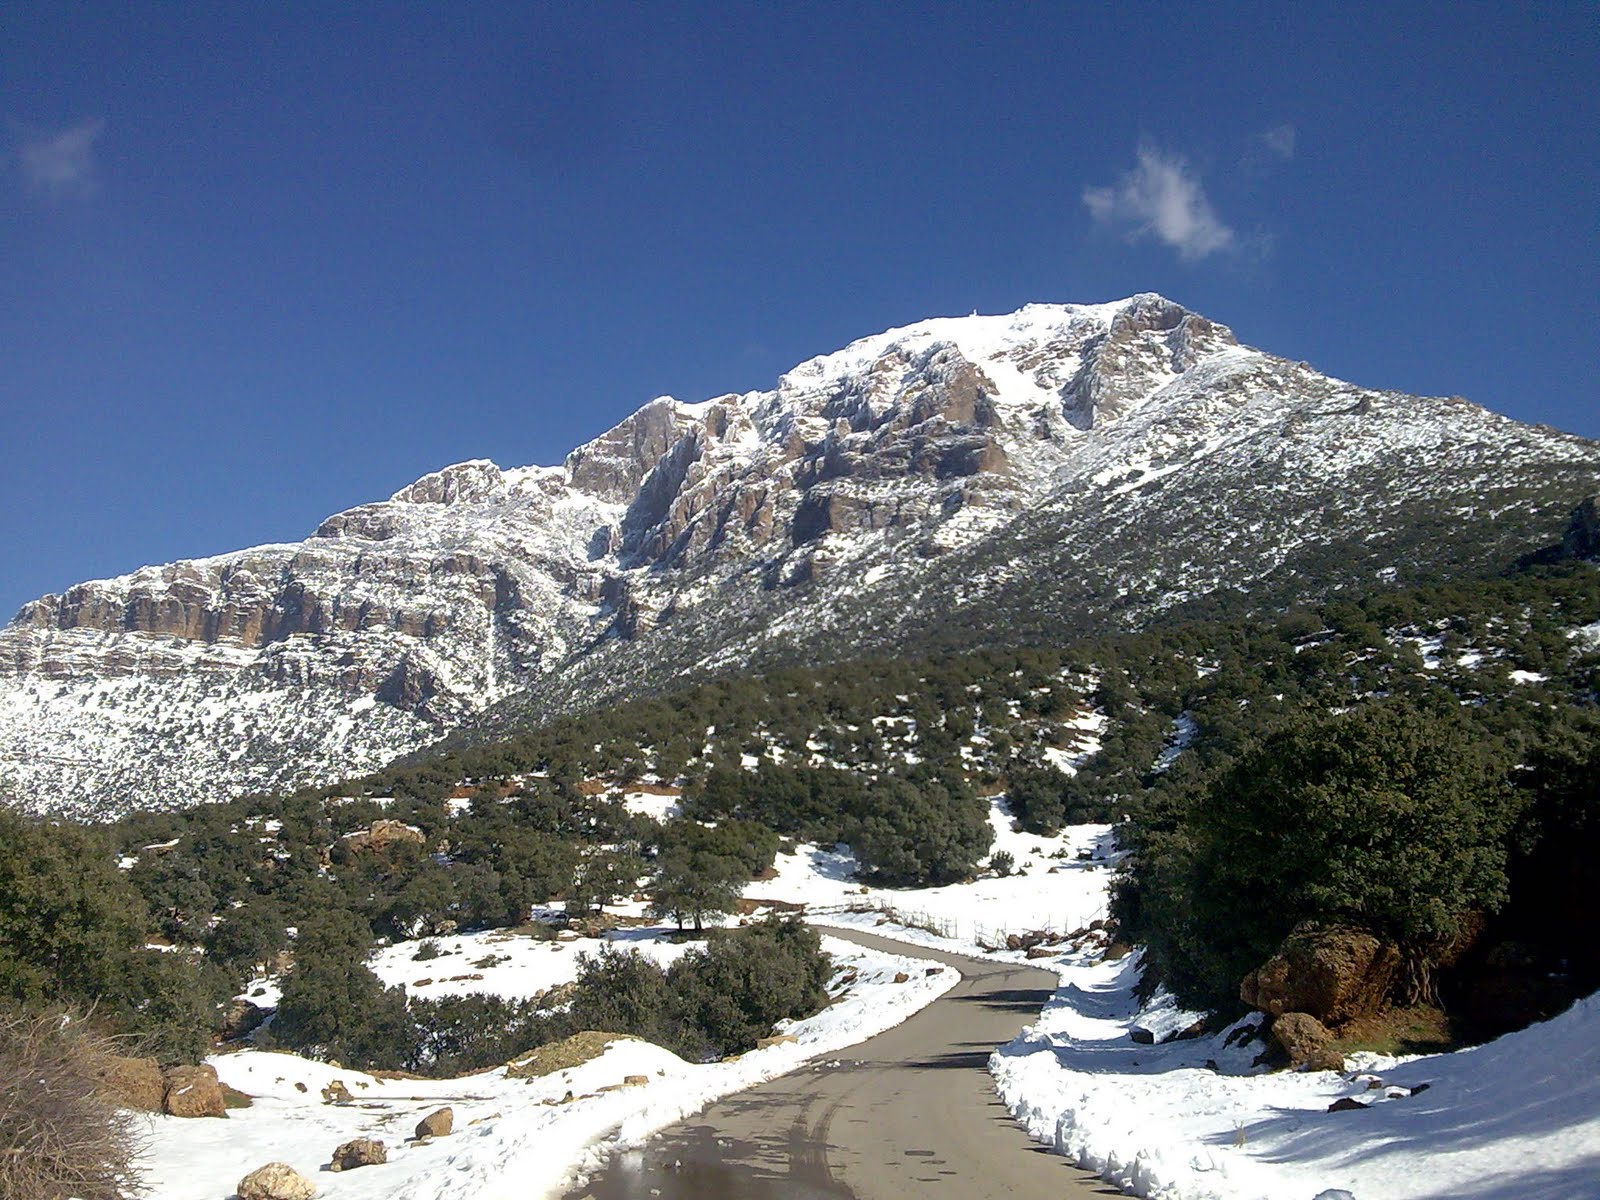  صور رائعة لجبال الونشريس لا تفوتوها  Image016